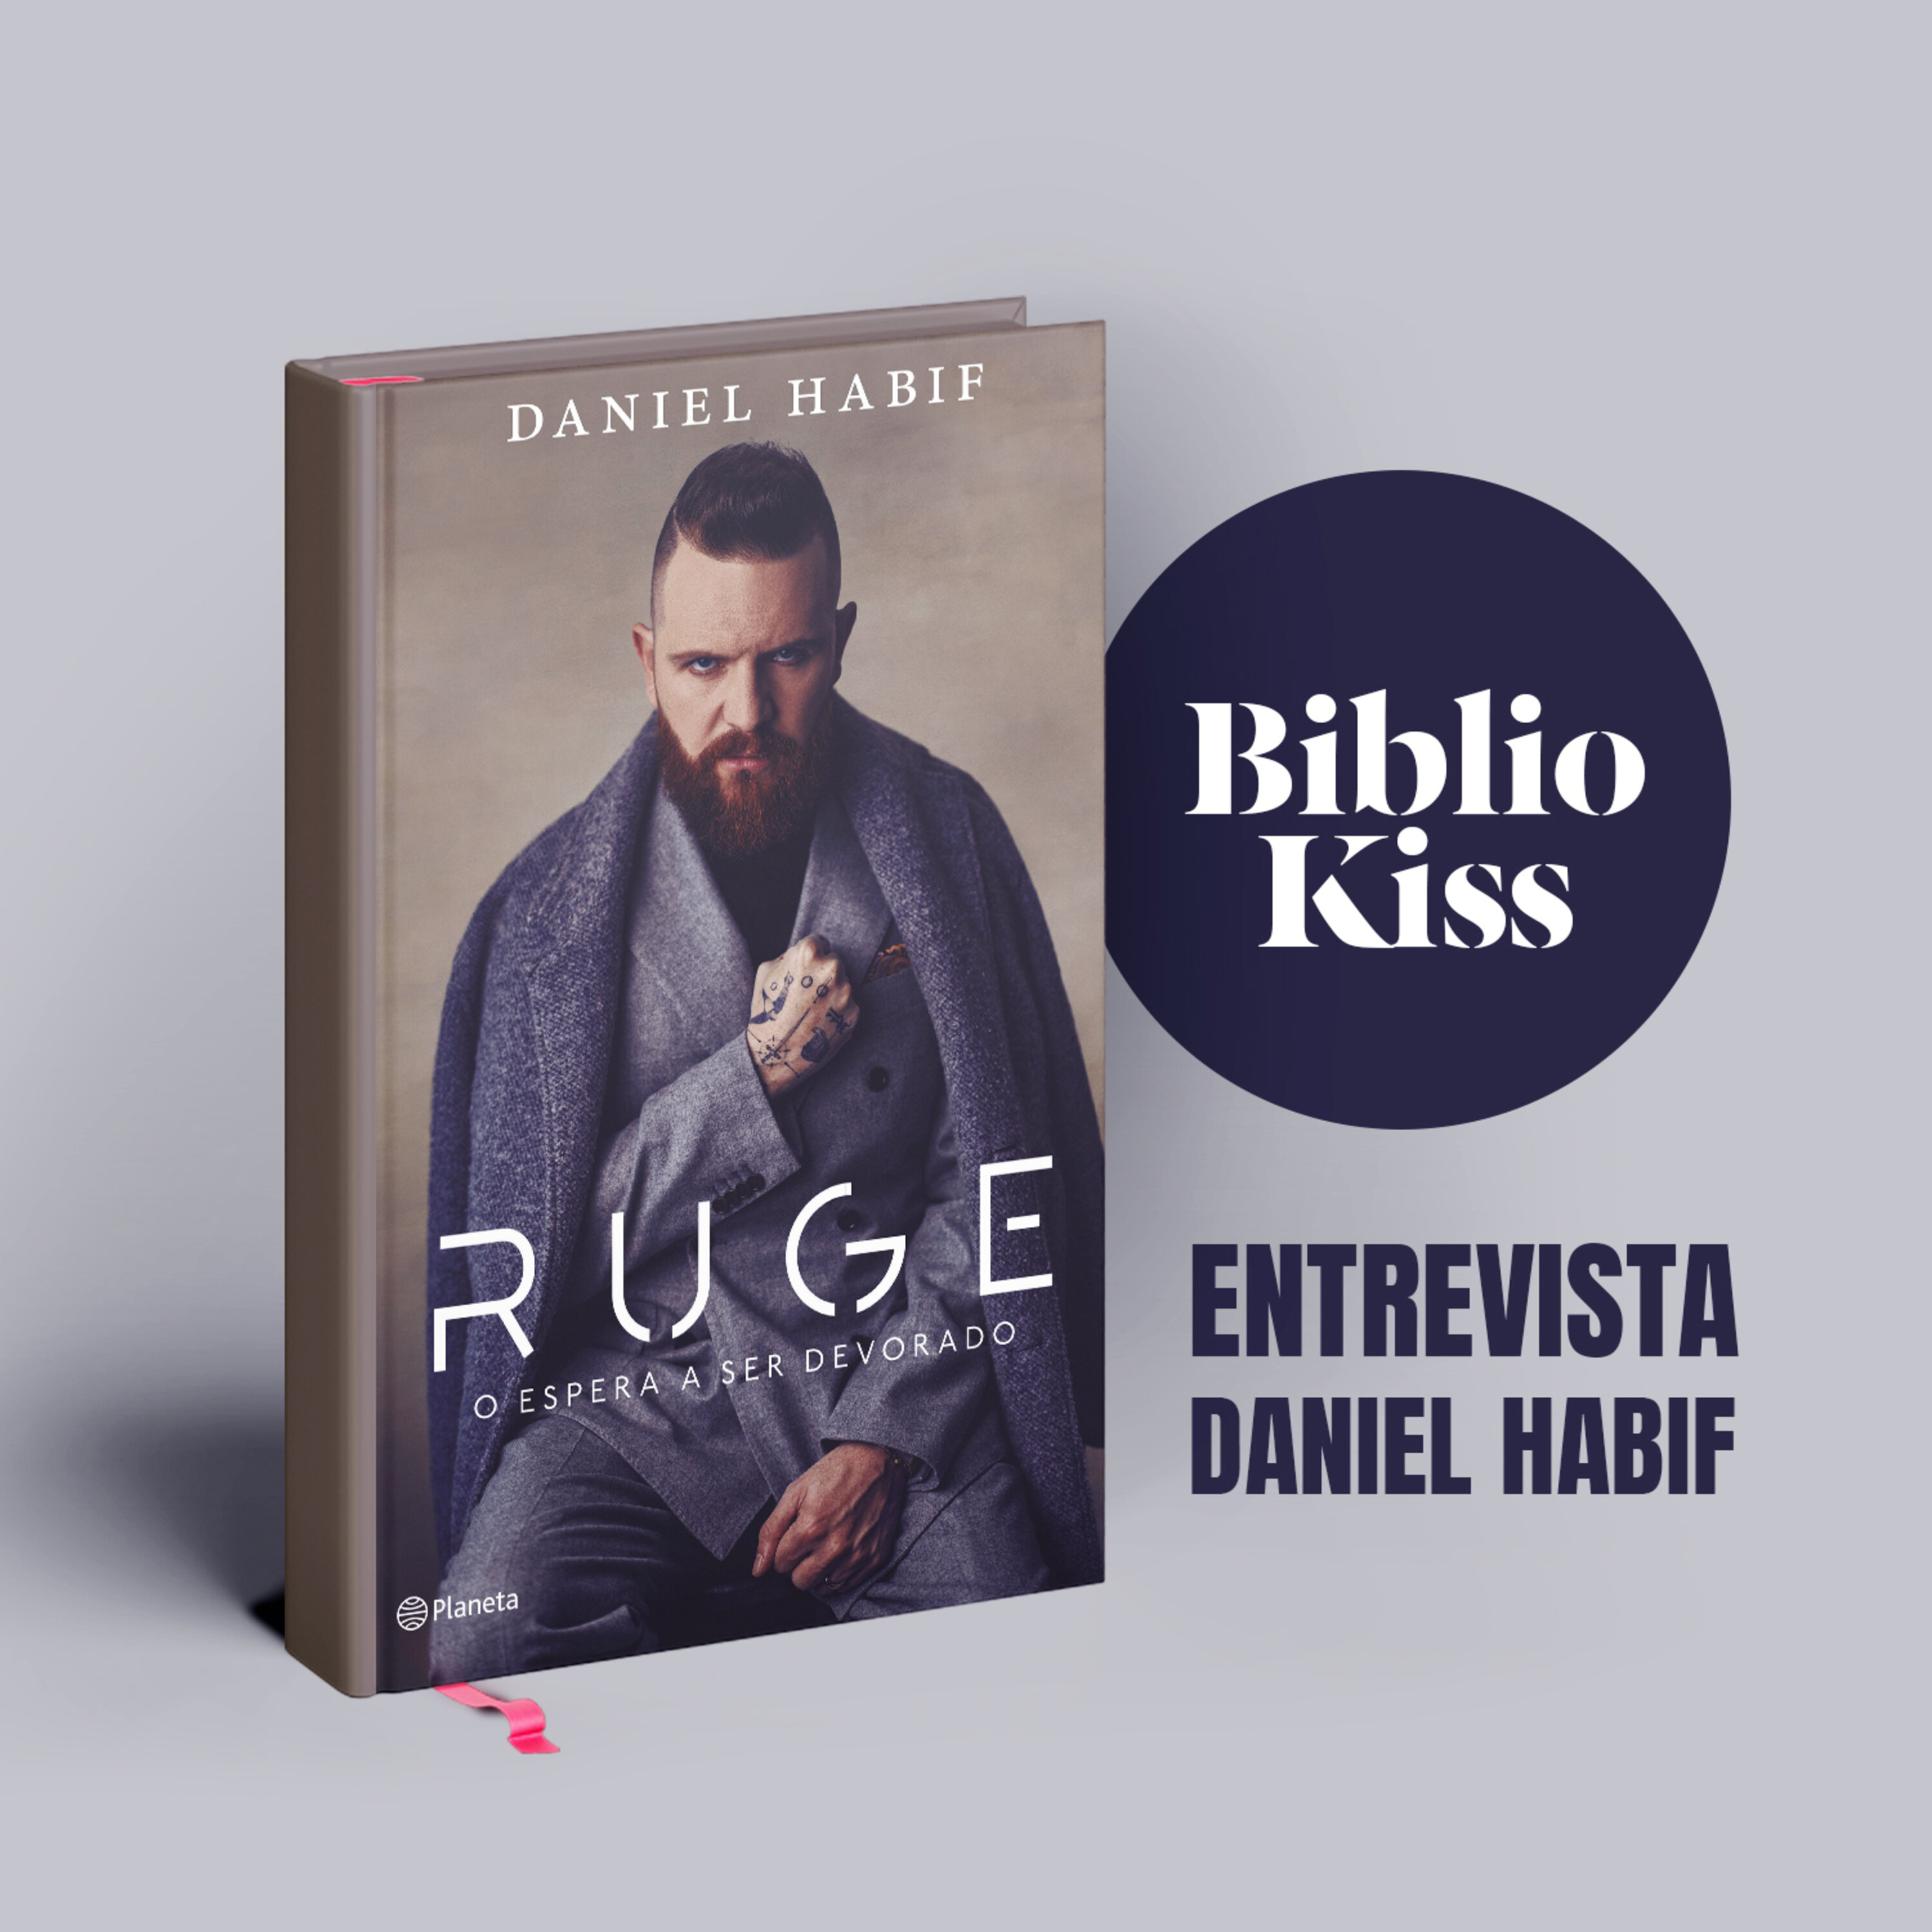 Daniel Habif nos presenta "Ruge, o espera a ser devorado"